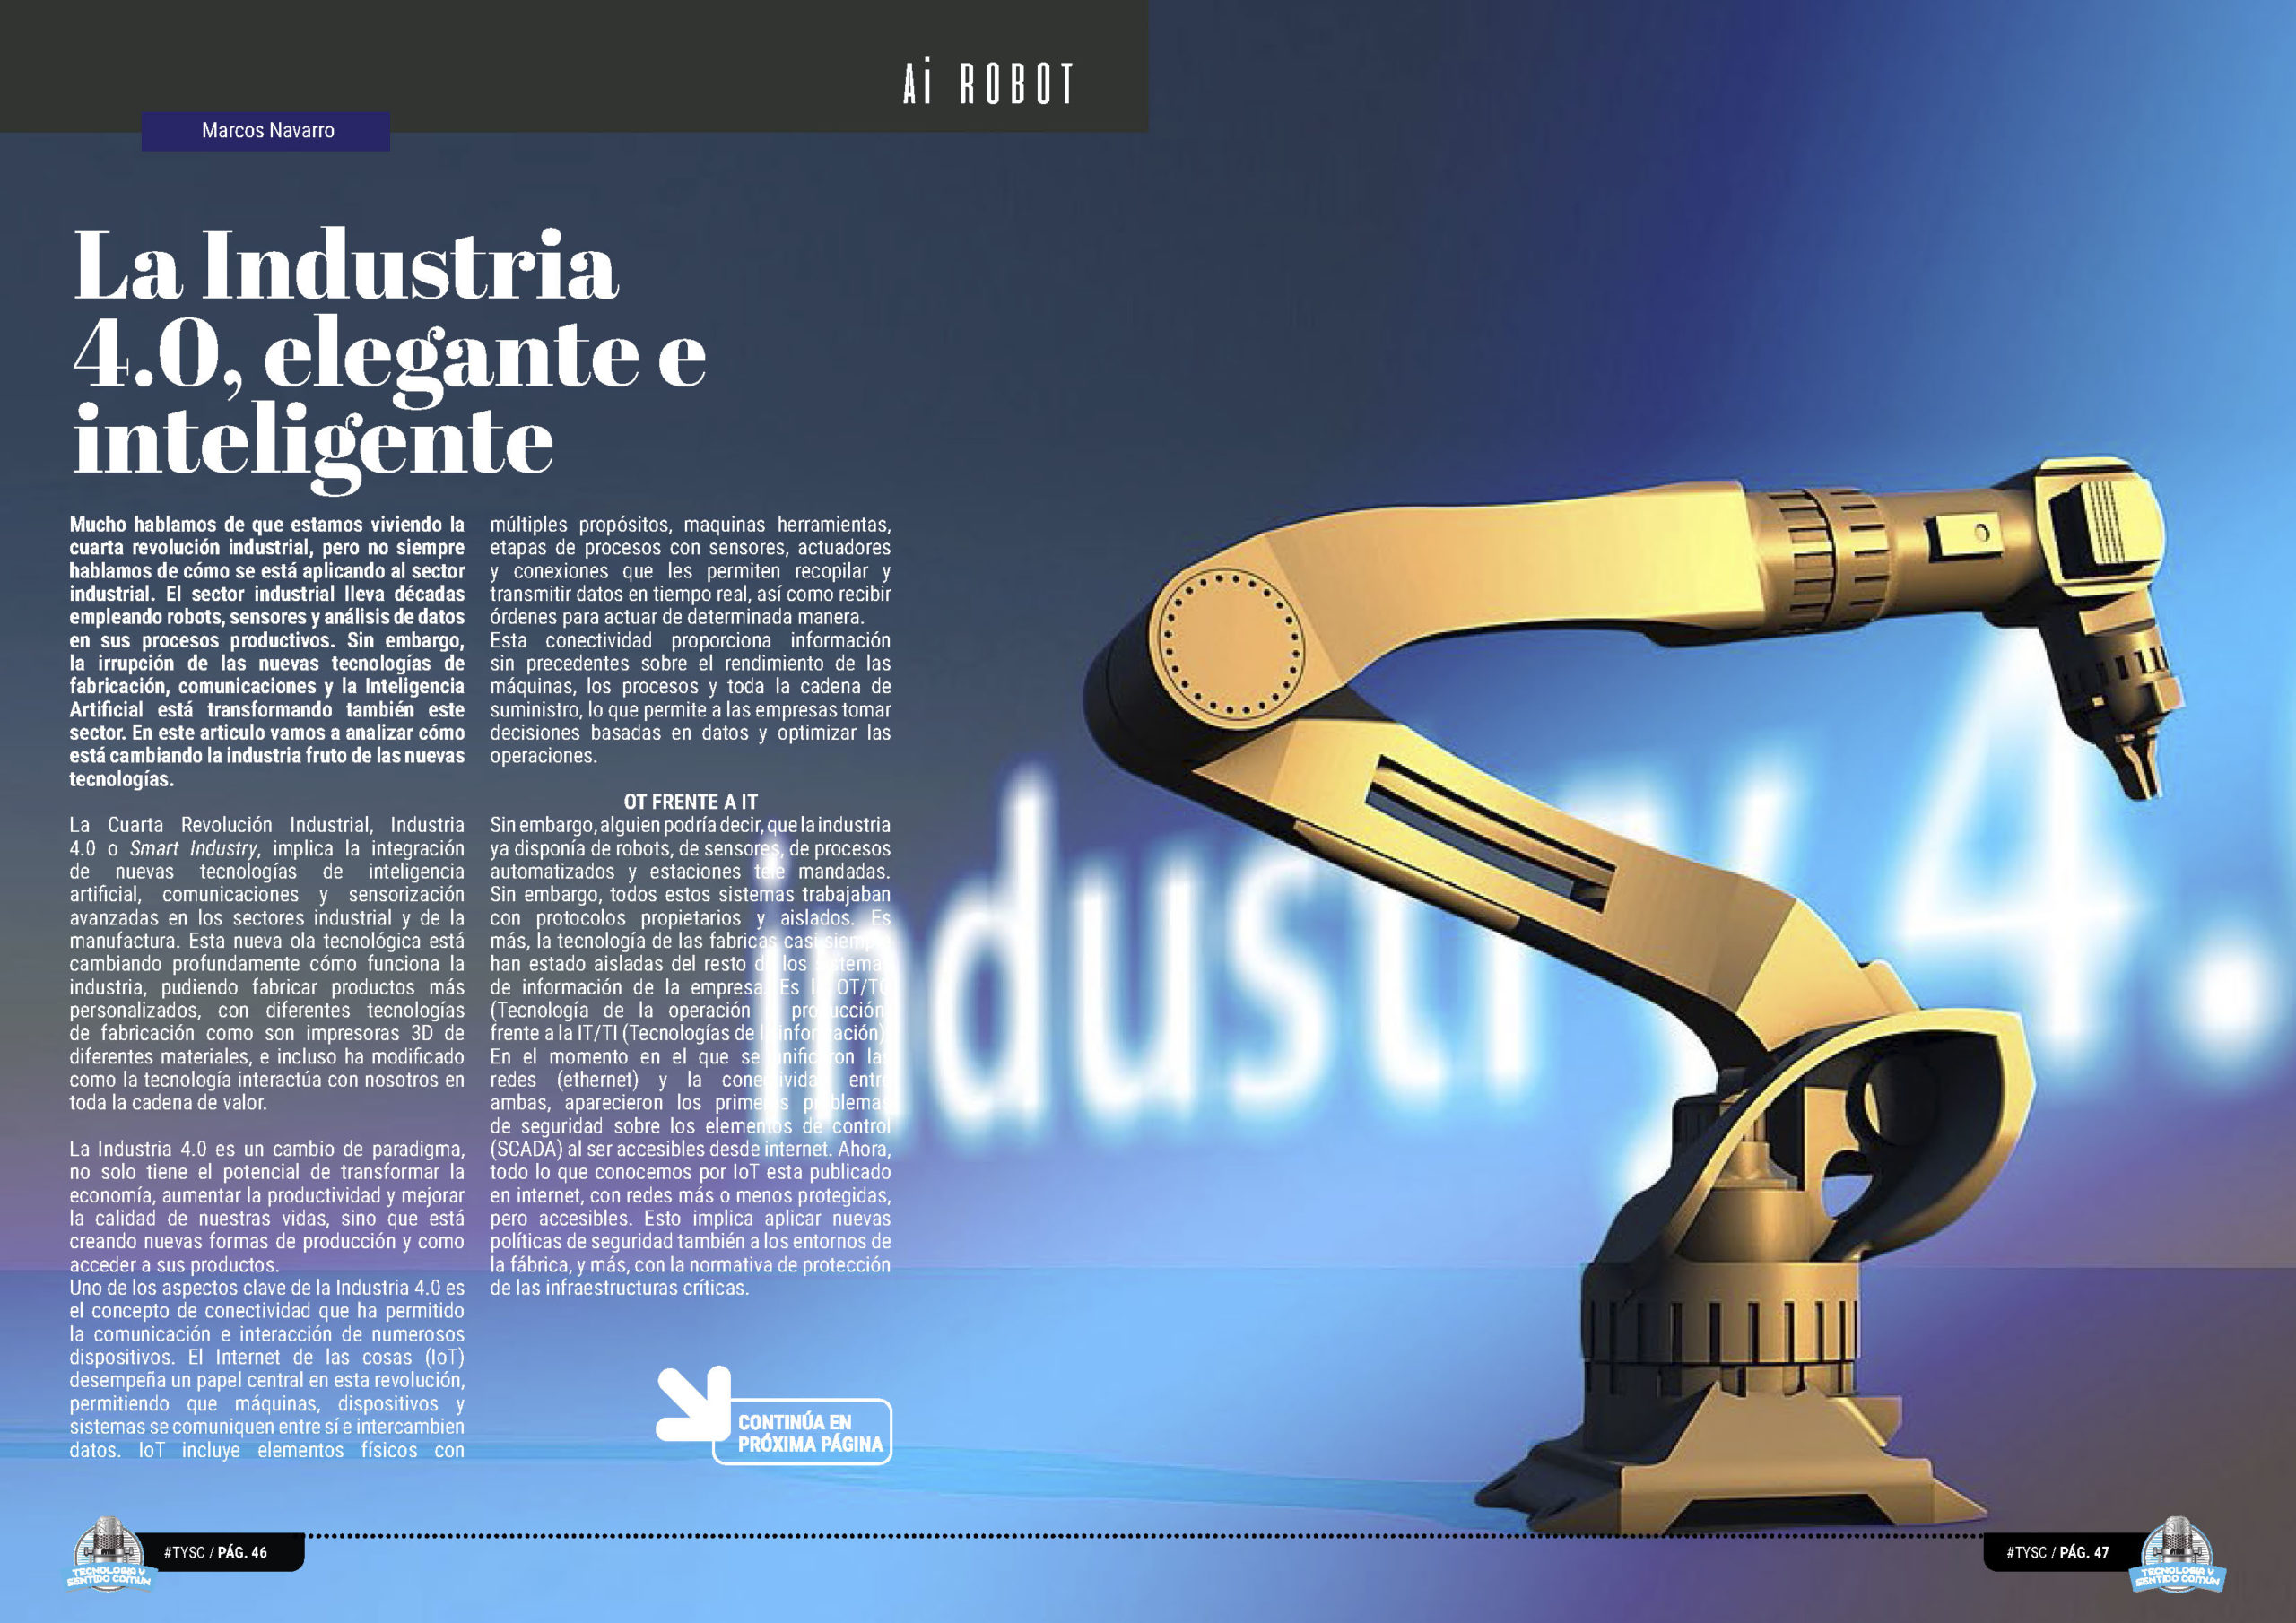 "La Industria 4.0, elegante e inteligente" artículo de Marcos Navarro Alcaraz en la seccion "Ai Robot" de la edición de diciembre de la Revista Mensual Tecnología y Sentido Común TYSC